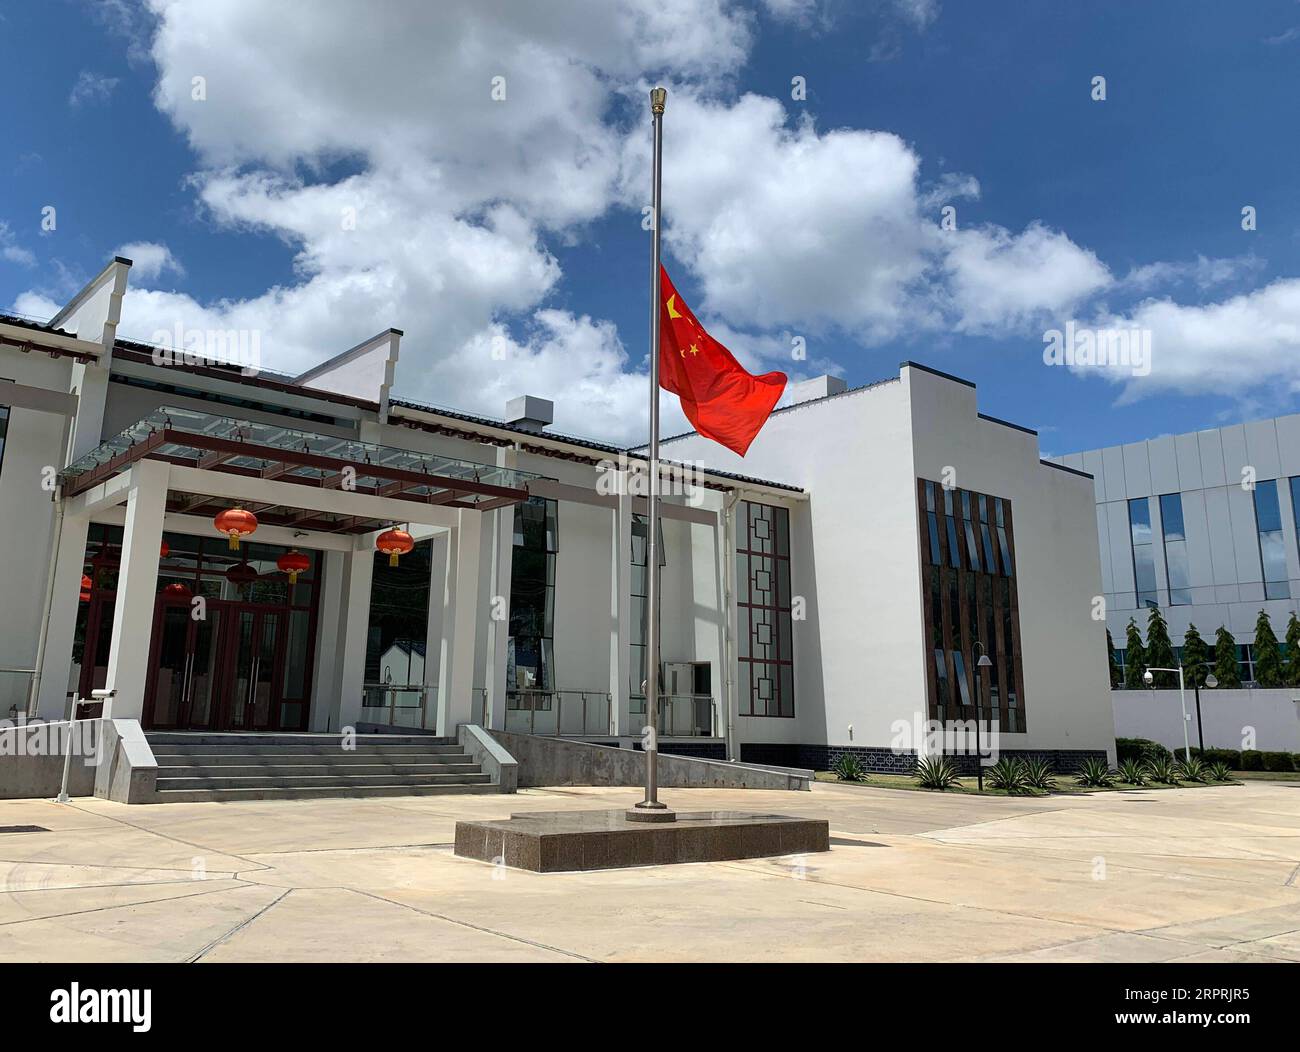 200405 -- PORTO DI SPAGNA, 5 aprile 2020 Xinhua -- una bandiera nazionale cinese vola a mezz'asta per piangere i martiri morti nella lotta contro la nuova epidemia di COVID-19 e i compatrioti morti per la malattia presso l'ambasciata cinese a Trinidad e Tobago a Port of Spain, Trinidad and Tobago, il 4 aprile 2020. Ambasciata cinese a Trinidad e Tobago/Handout via Xinhua TRINIDAD E TOBAGO-COVID-19-AMBASCIATA CINESE-NATIONAL FLAG-HALF-MAST PUBLICATIONxNOTxINxCHN Foto Stock